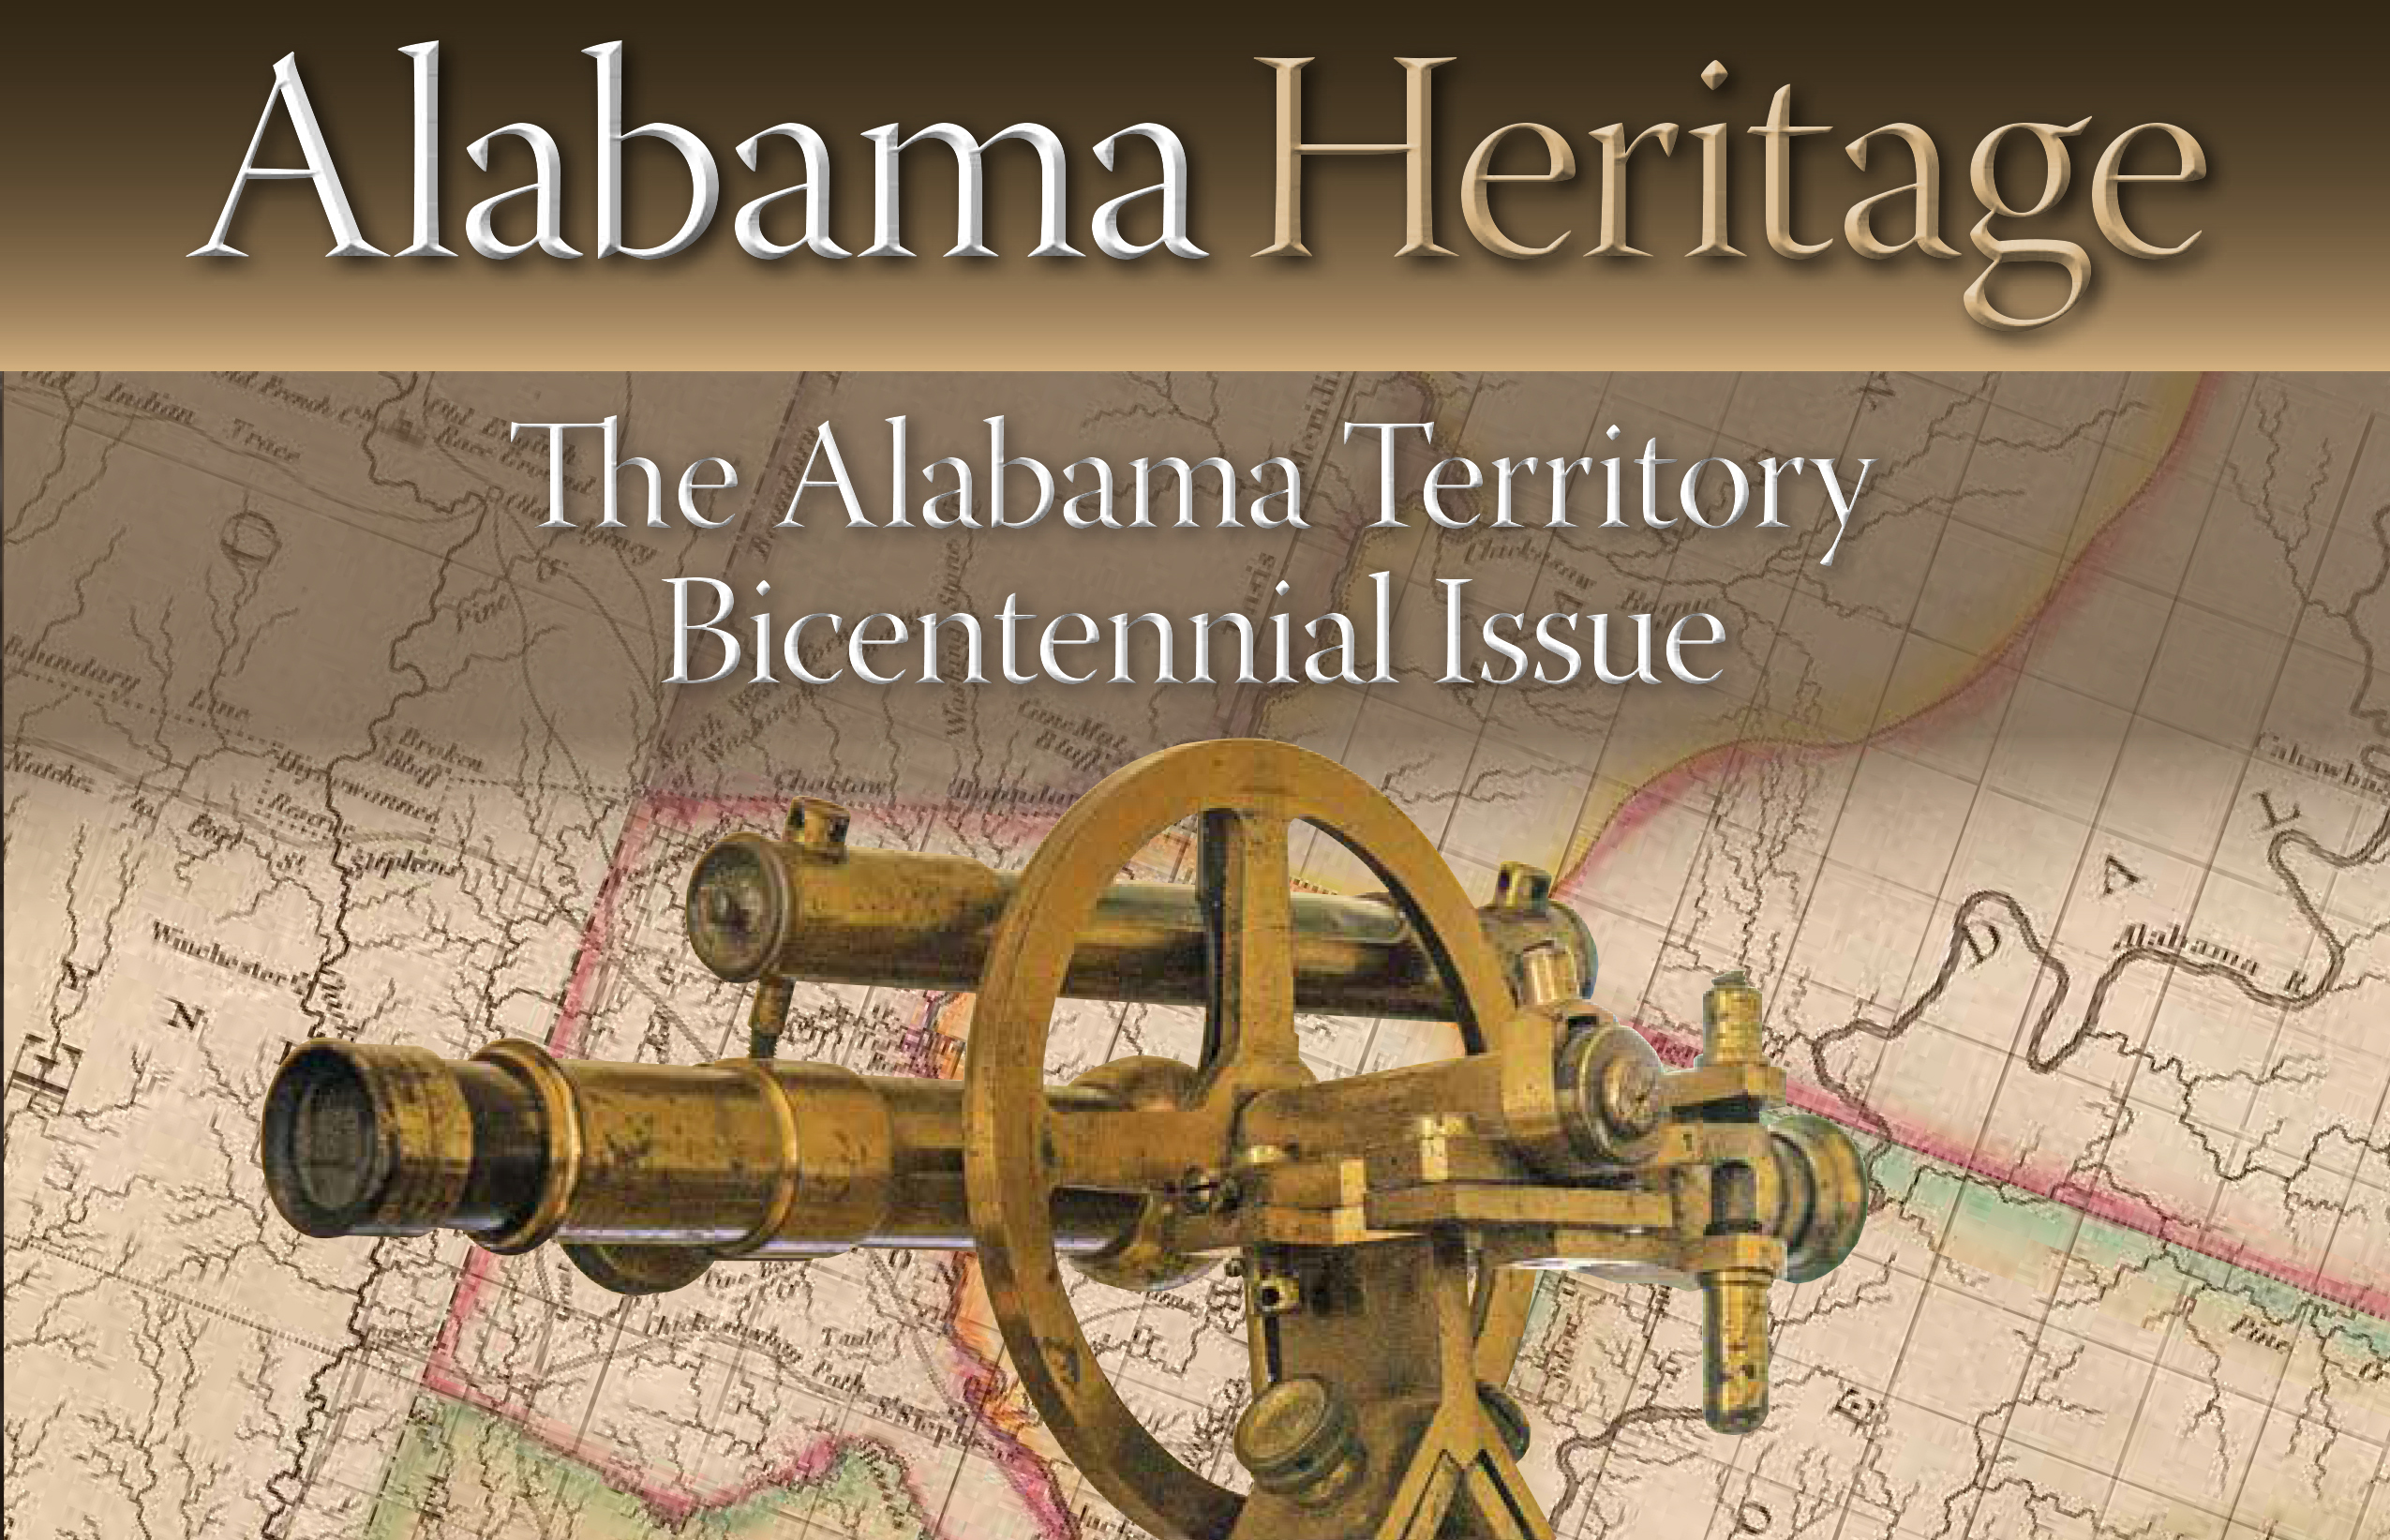 Alabama Heritage Magazine Launches Alabama 200 Celebration